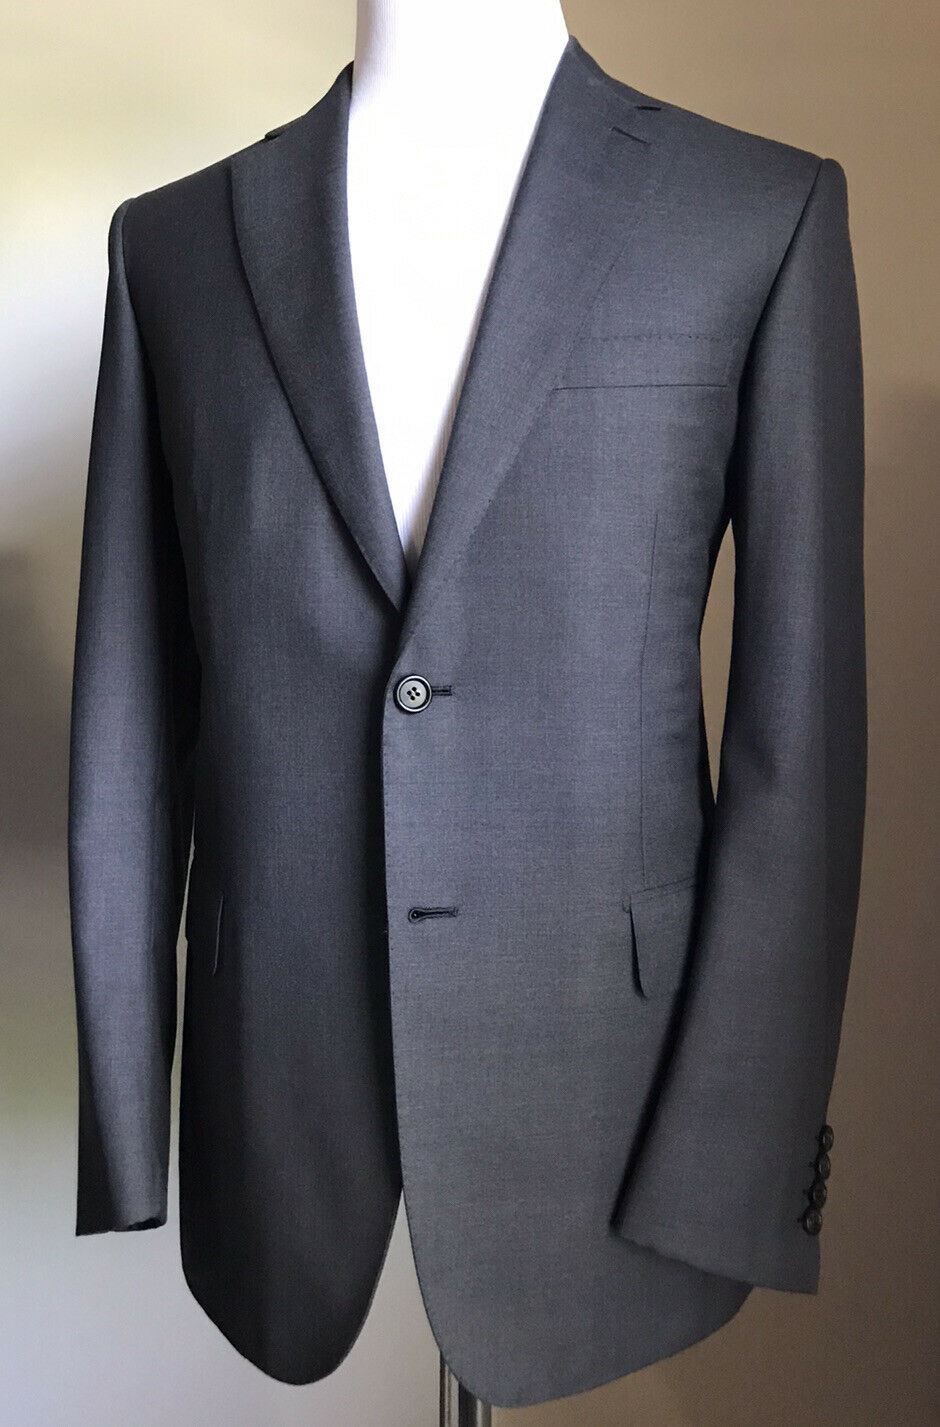 Новый мужской шерстяной костюм Brioni Essential Super 160S за 5700 долларов США, серый цвет 40R, США/50R, ЕС